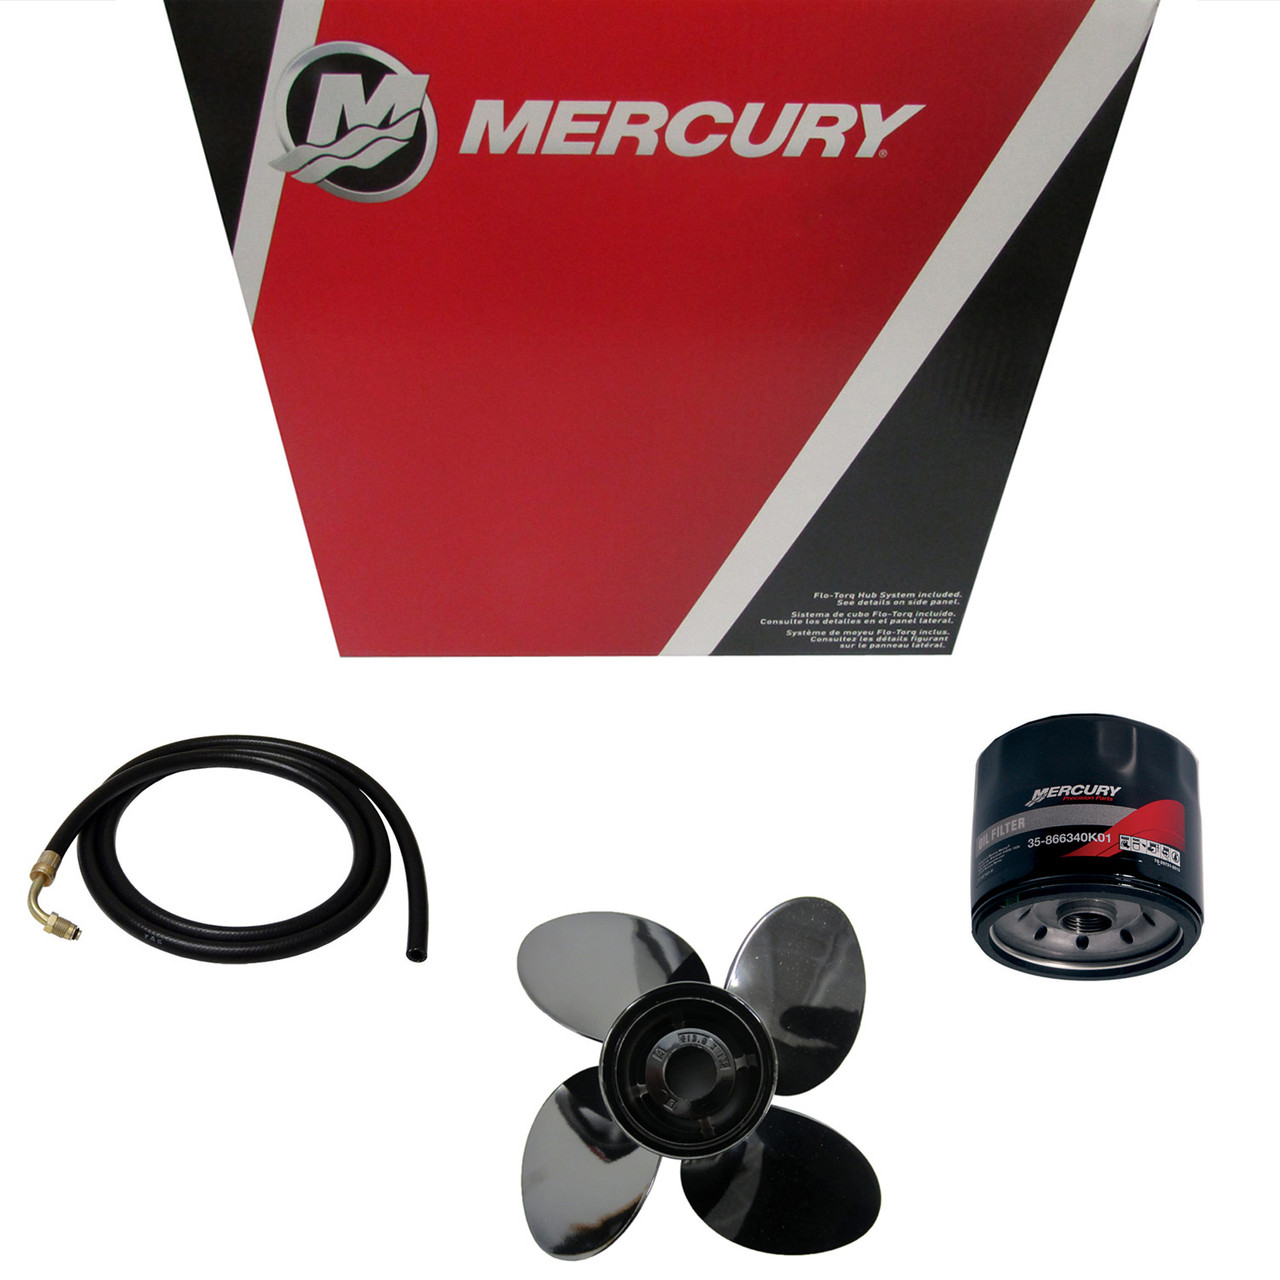 Mercury Marine / Mercruiser New OEM Enert Eco 16X22rh, 48-8M0127051